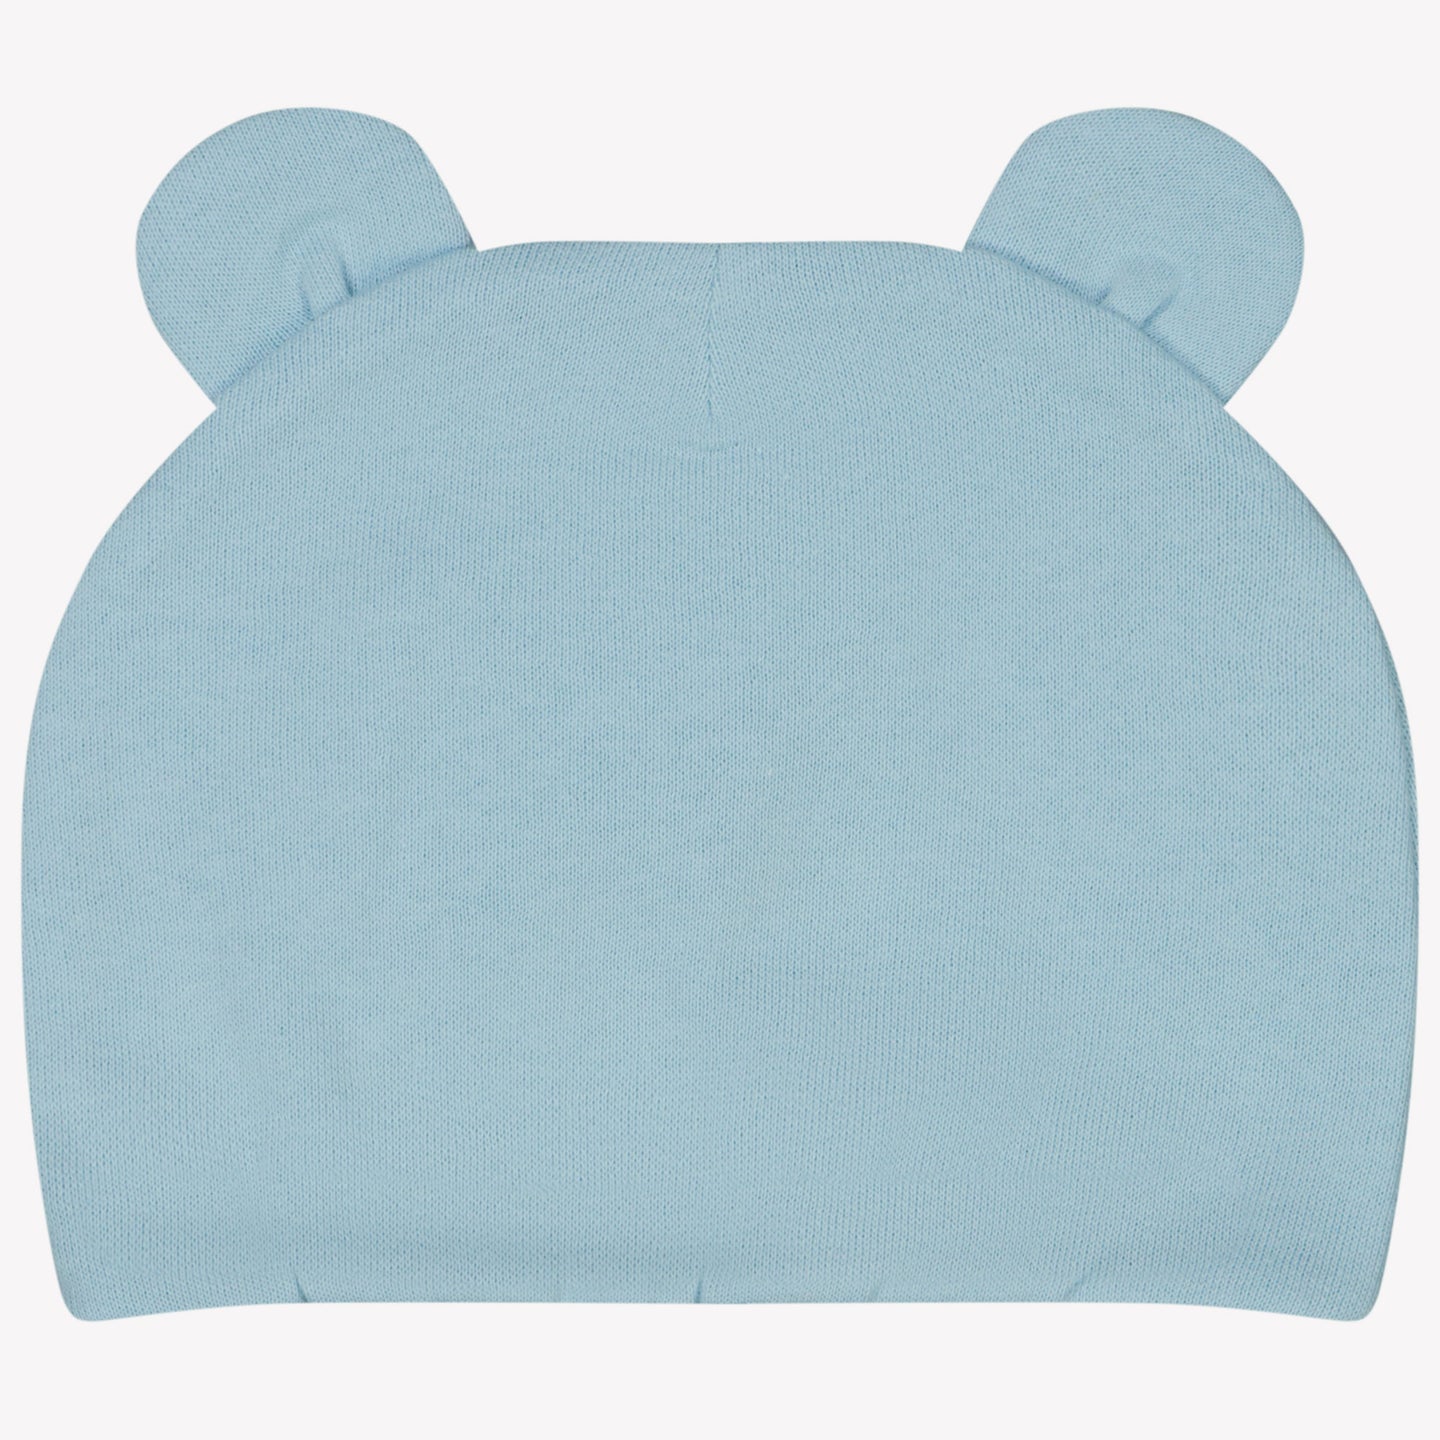 Moschino Bebé unisex sombrero azul claro